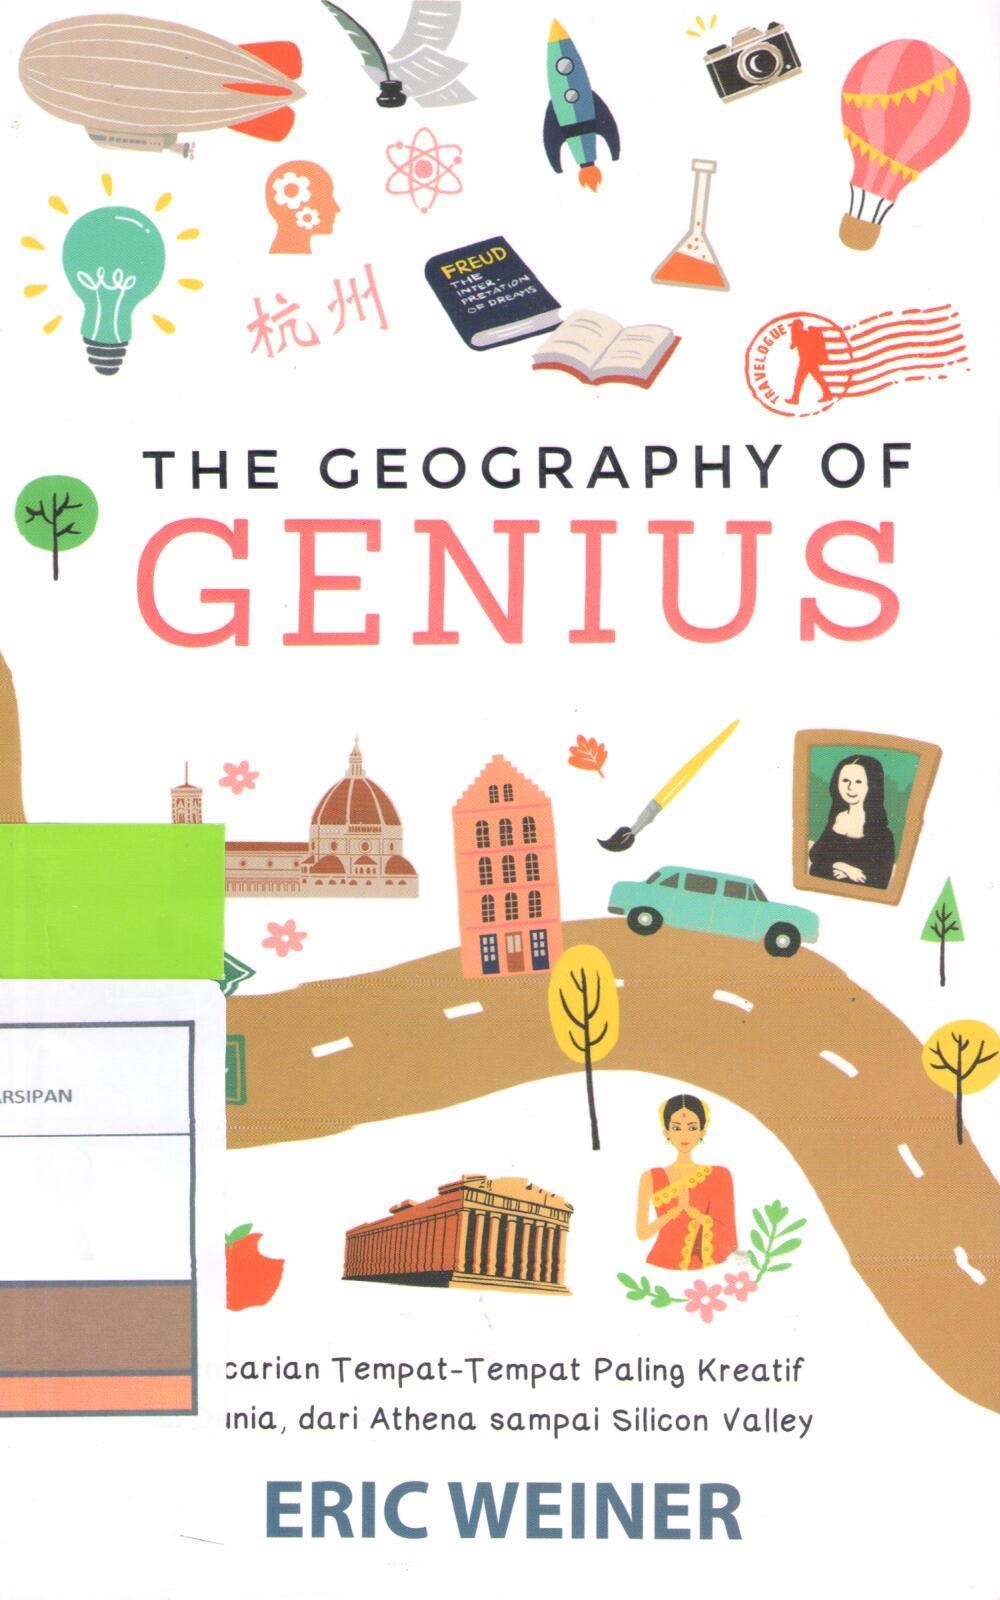 The Geography of Genius :  Pencarian Tempat-Tempat Paling Kreatif di Dunia, Dari Athena sampai Silicon Valley